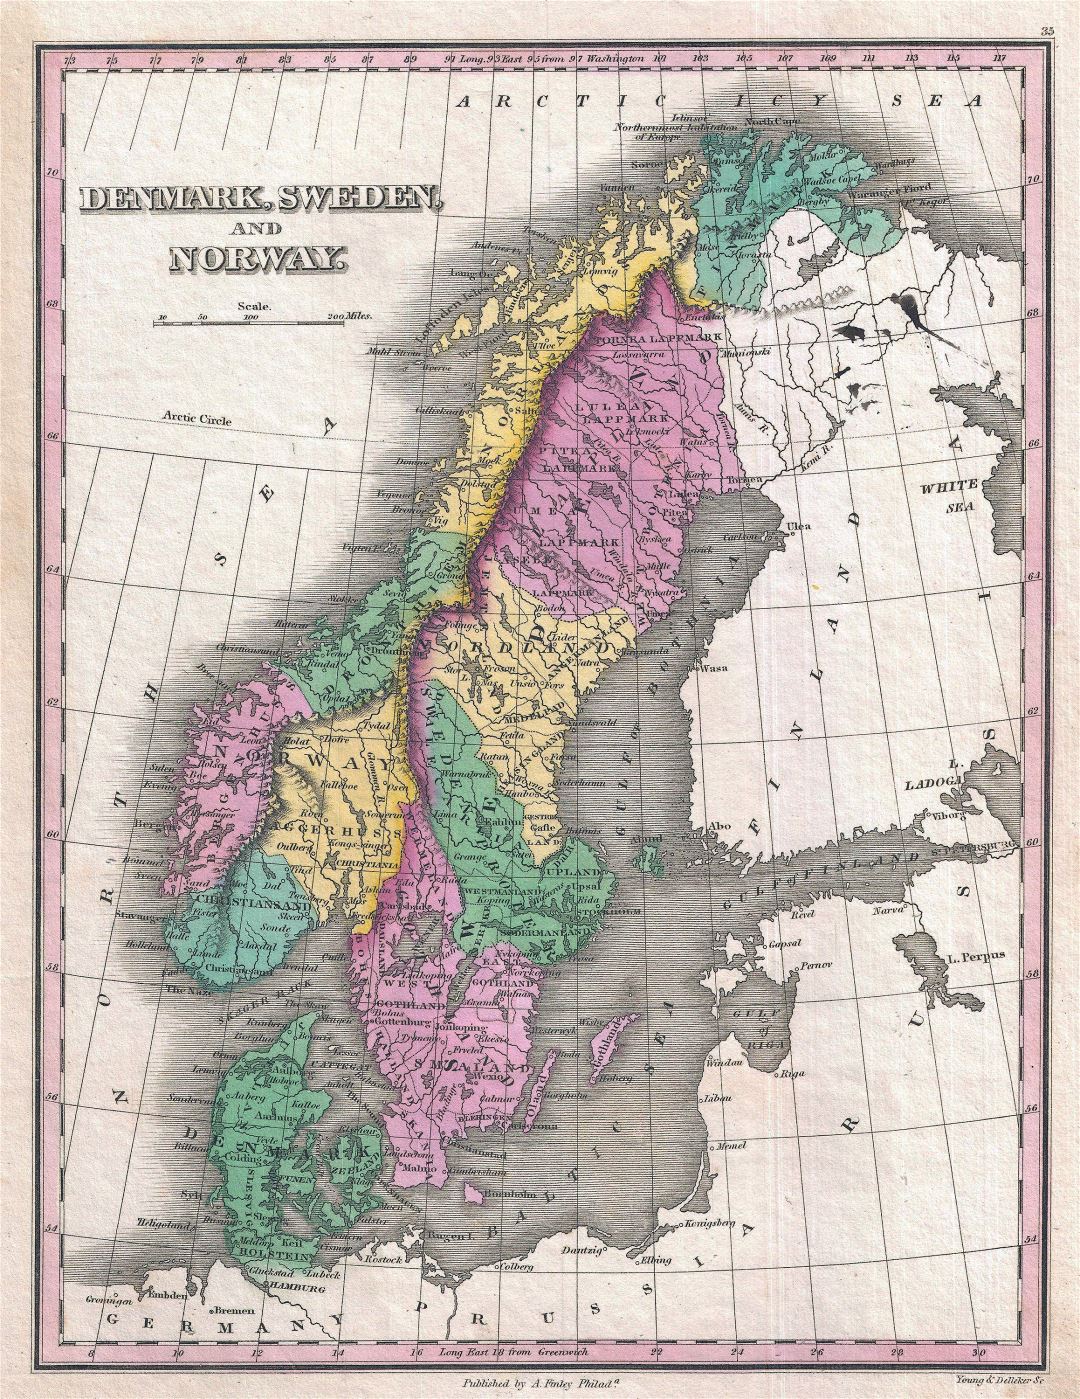 Grande detallado mapa político y administrativo antiguo de Dinamarca, Suecia y Noruega - 1827